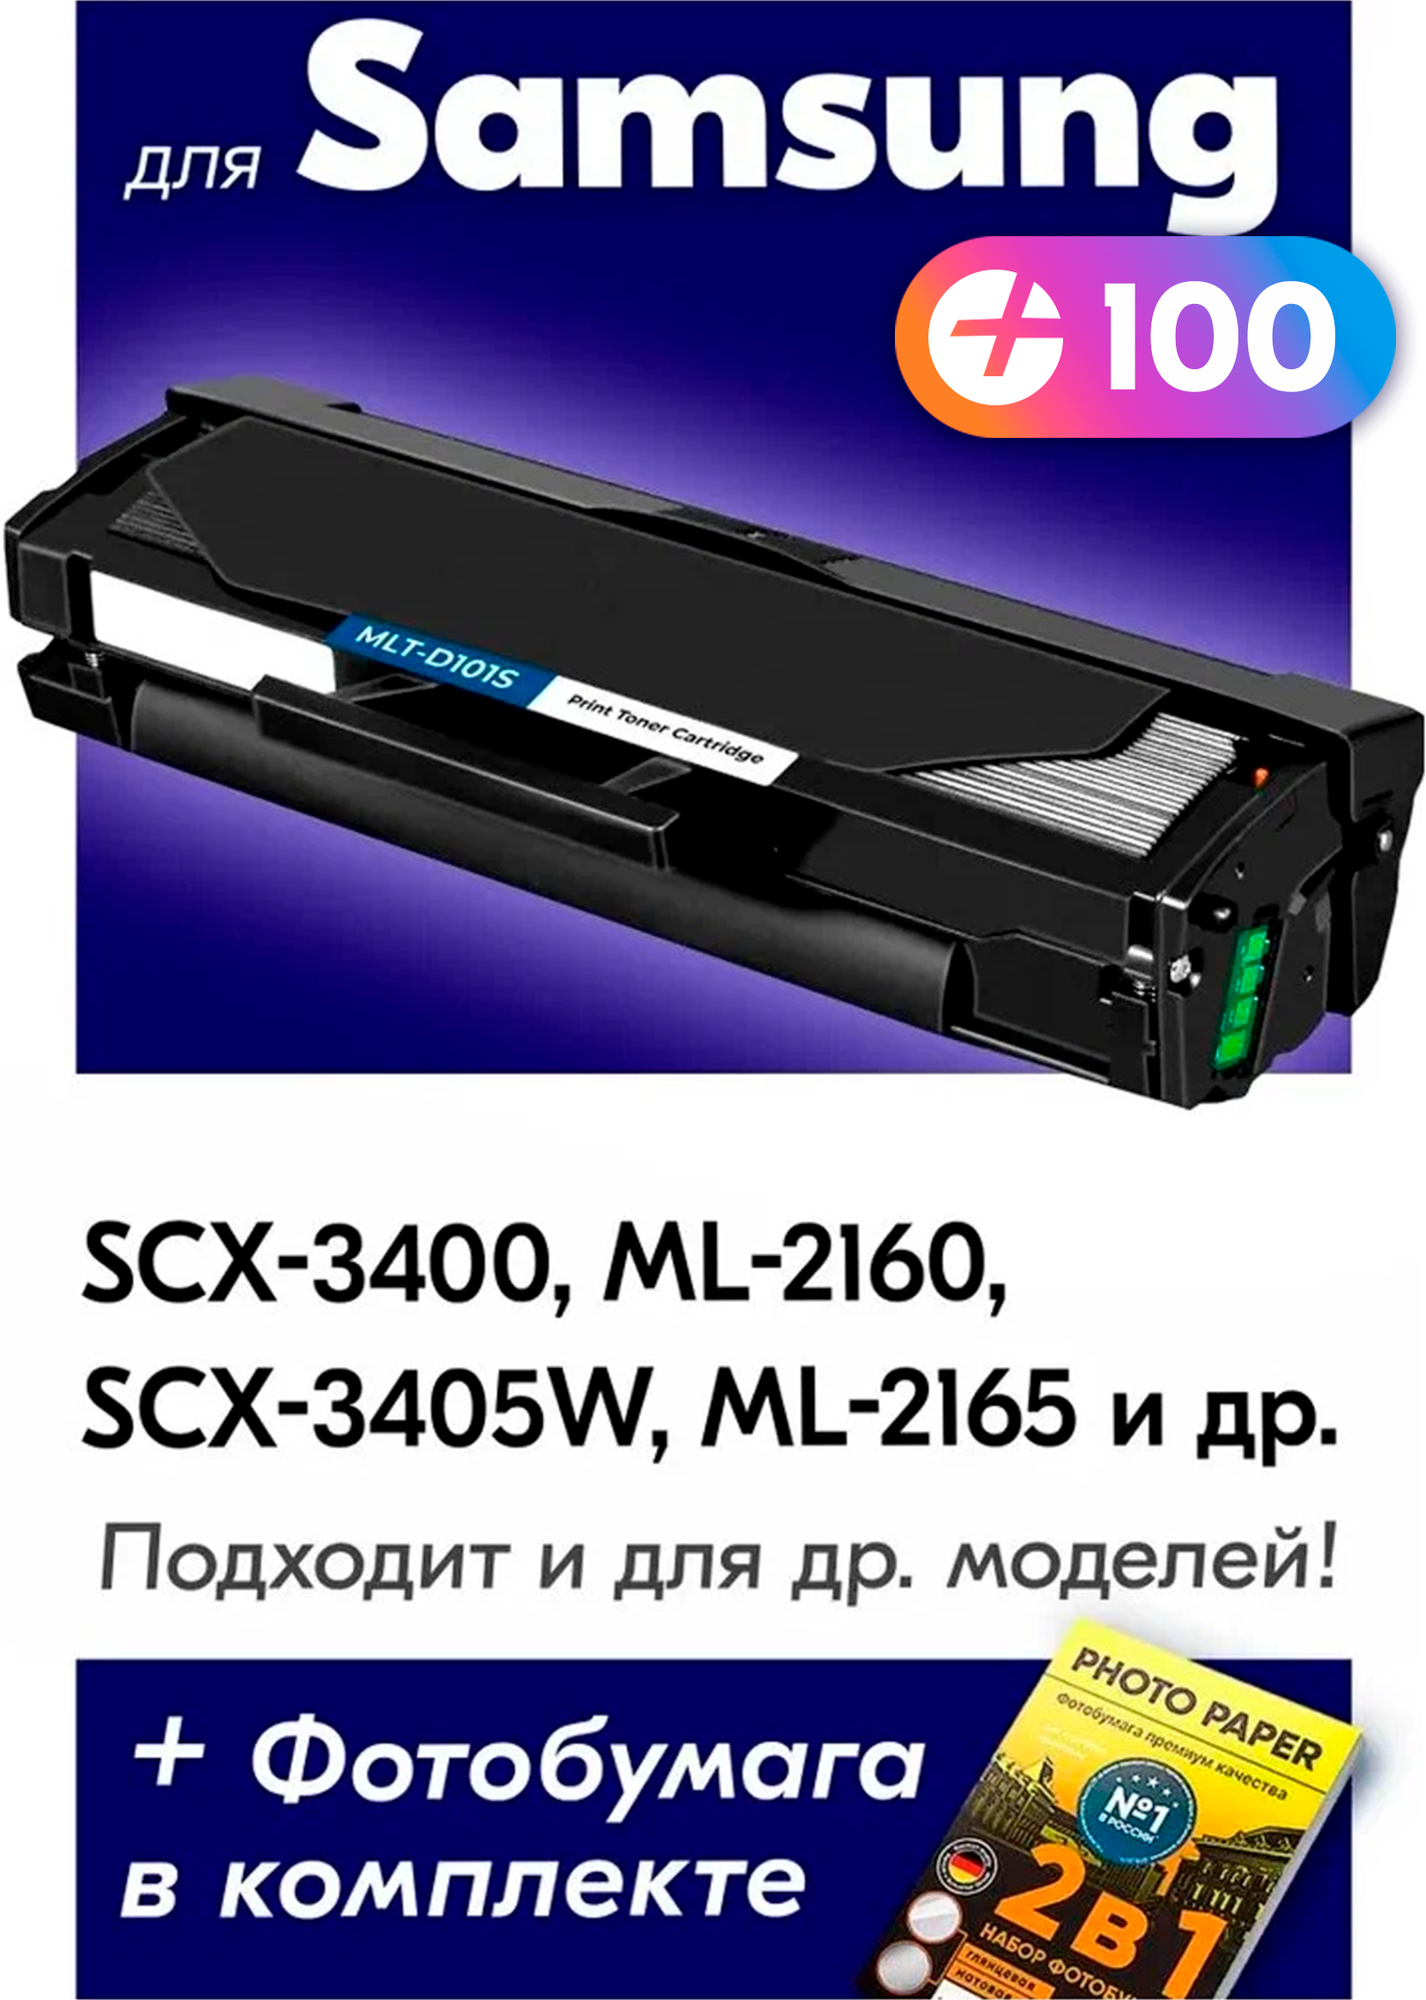 Лазерный картридж для Samsung MLT-D101S, Samsung SCX-3400, ML-2160, SCX-3405W с краской (тонером) черный новый заправляемый, 1500 копий